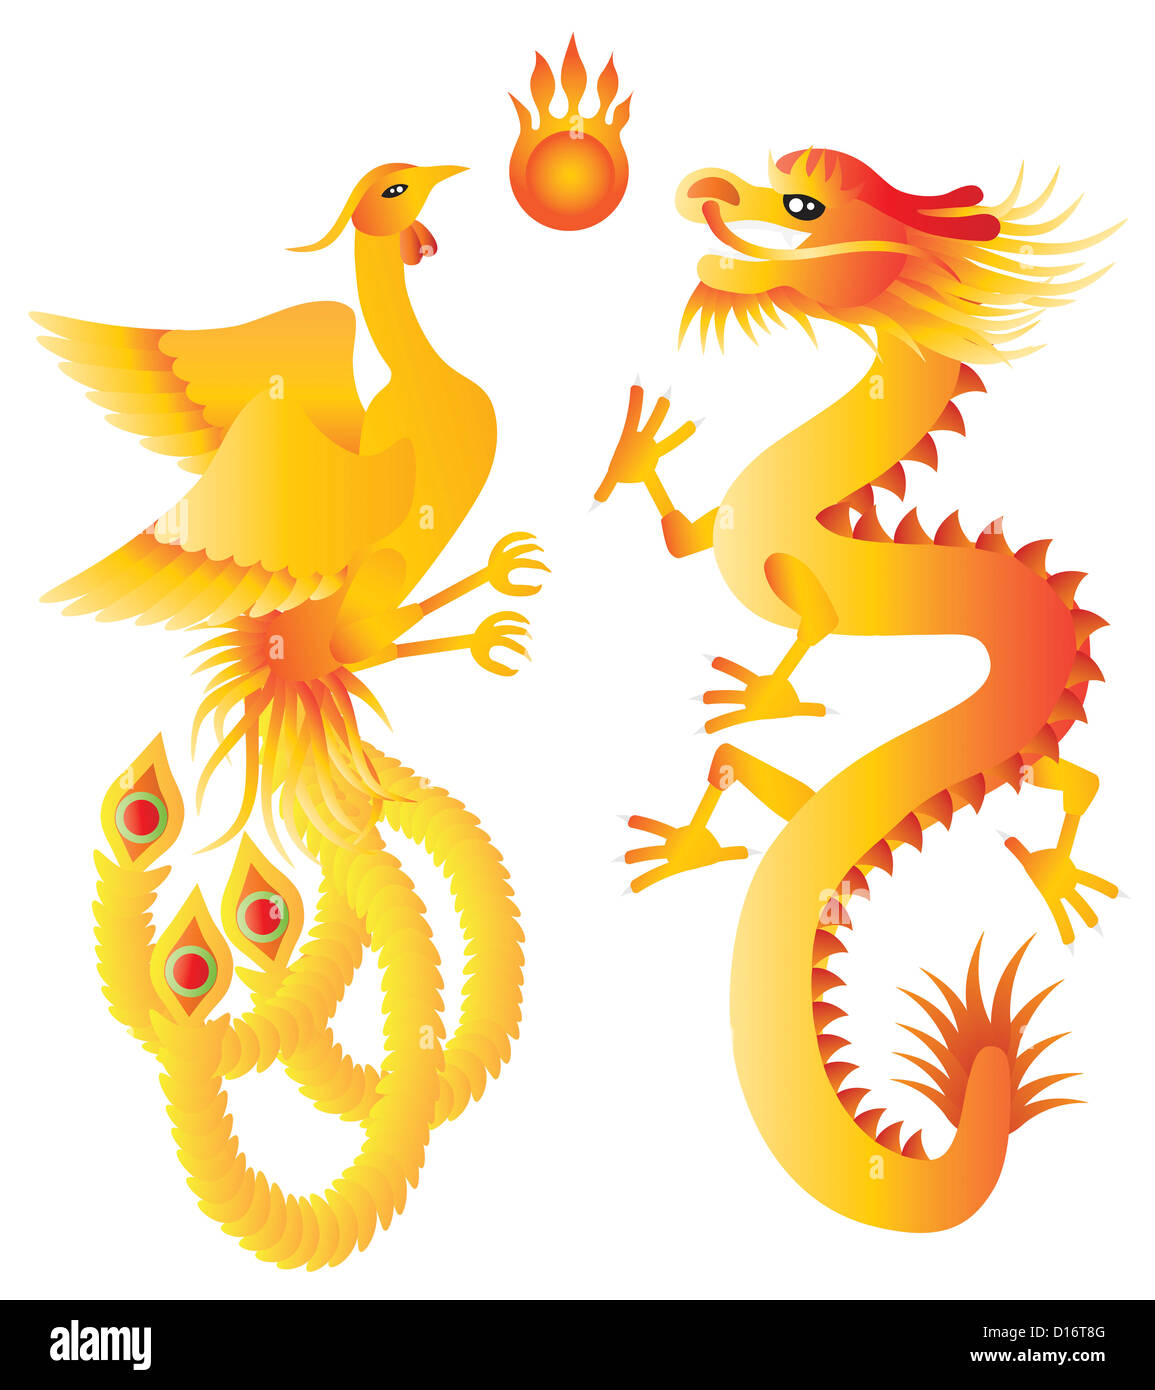 Drache und Phoenix Symbole für chinesische Hochzeit mit flammenden Ball-Illustration, Isolated on White Background Stockfoto